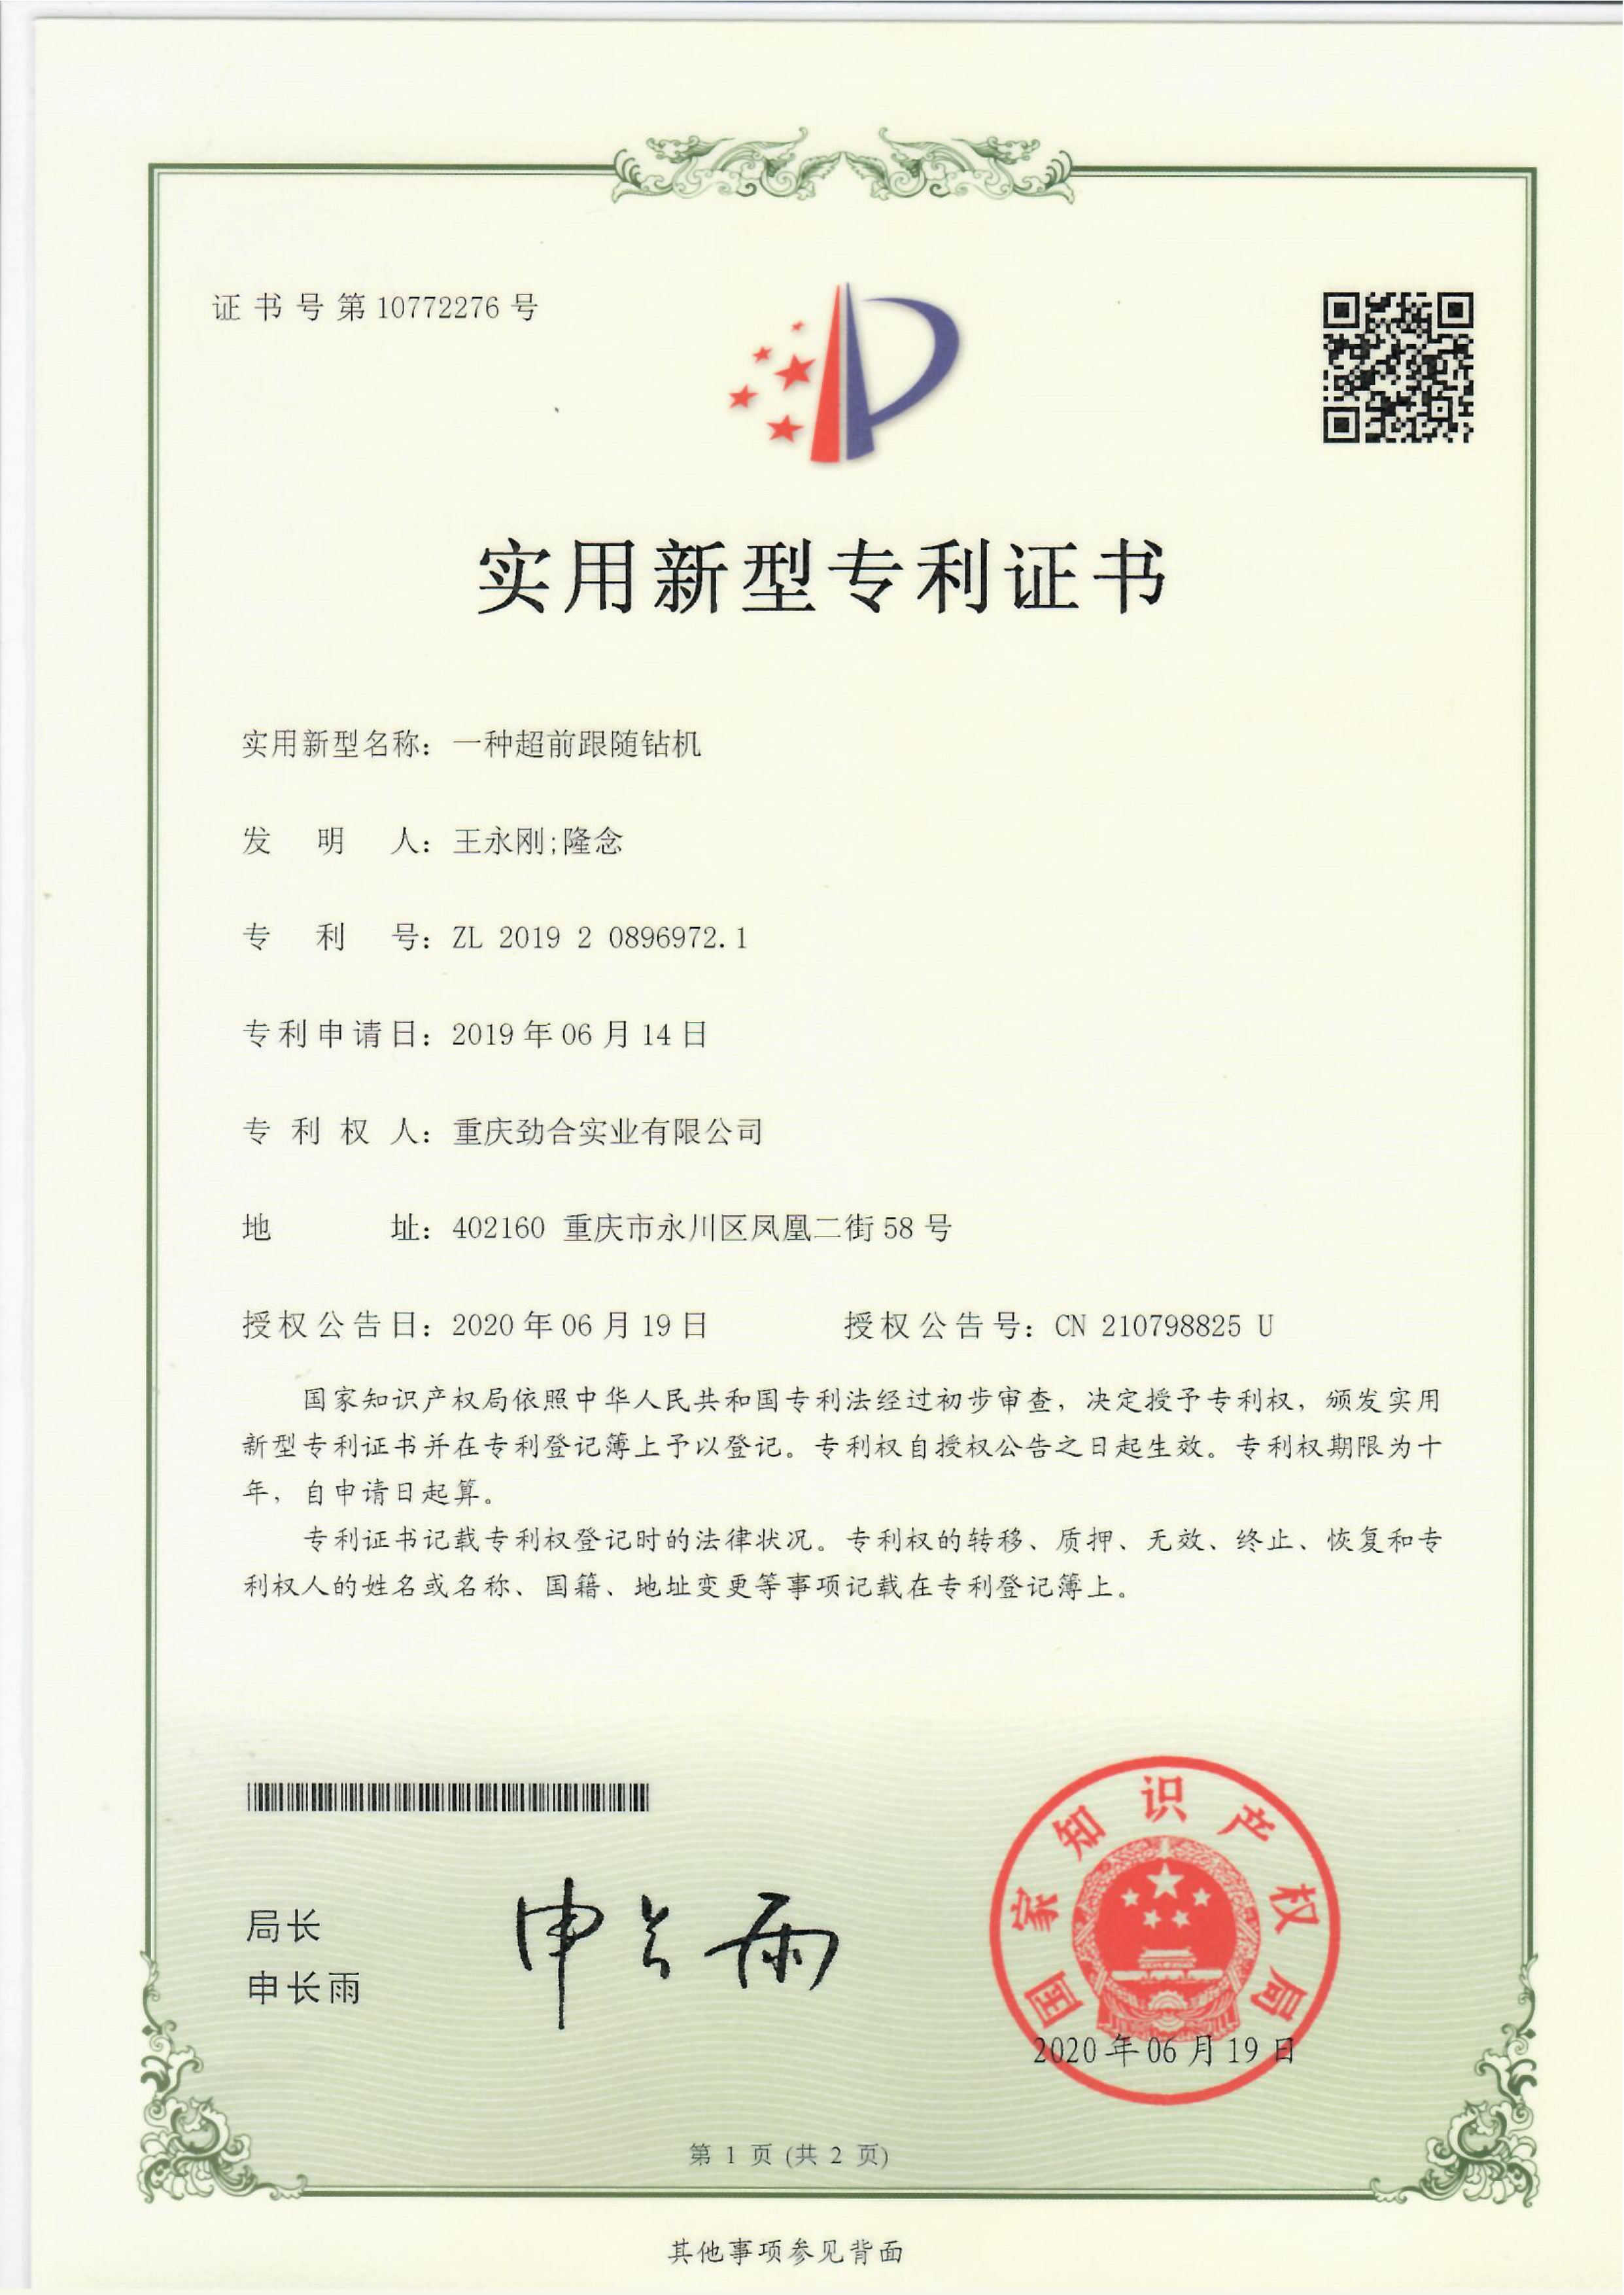 一种超前跟随云开体育·(中国)官方网站ZL 2019 2 0896972.1